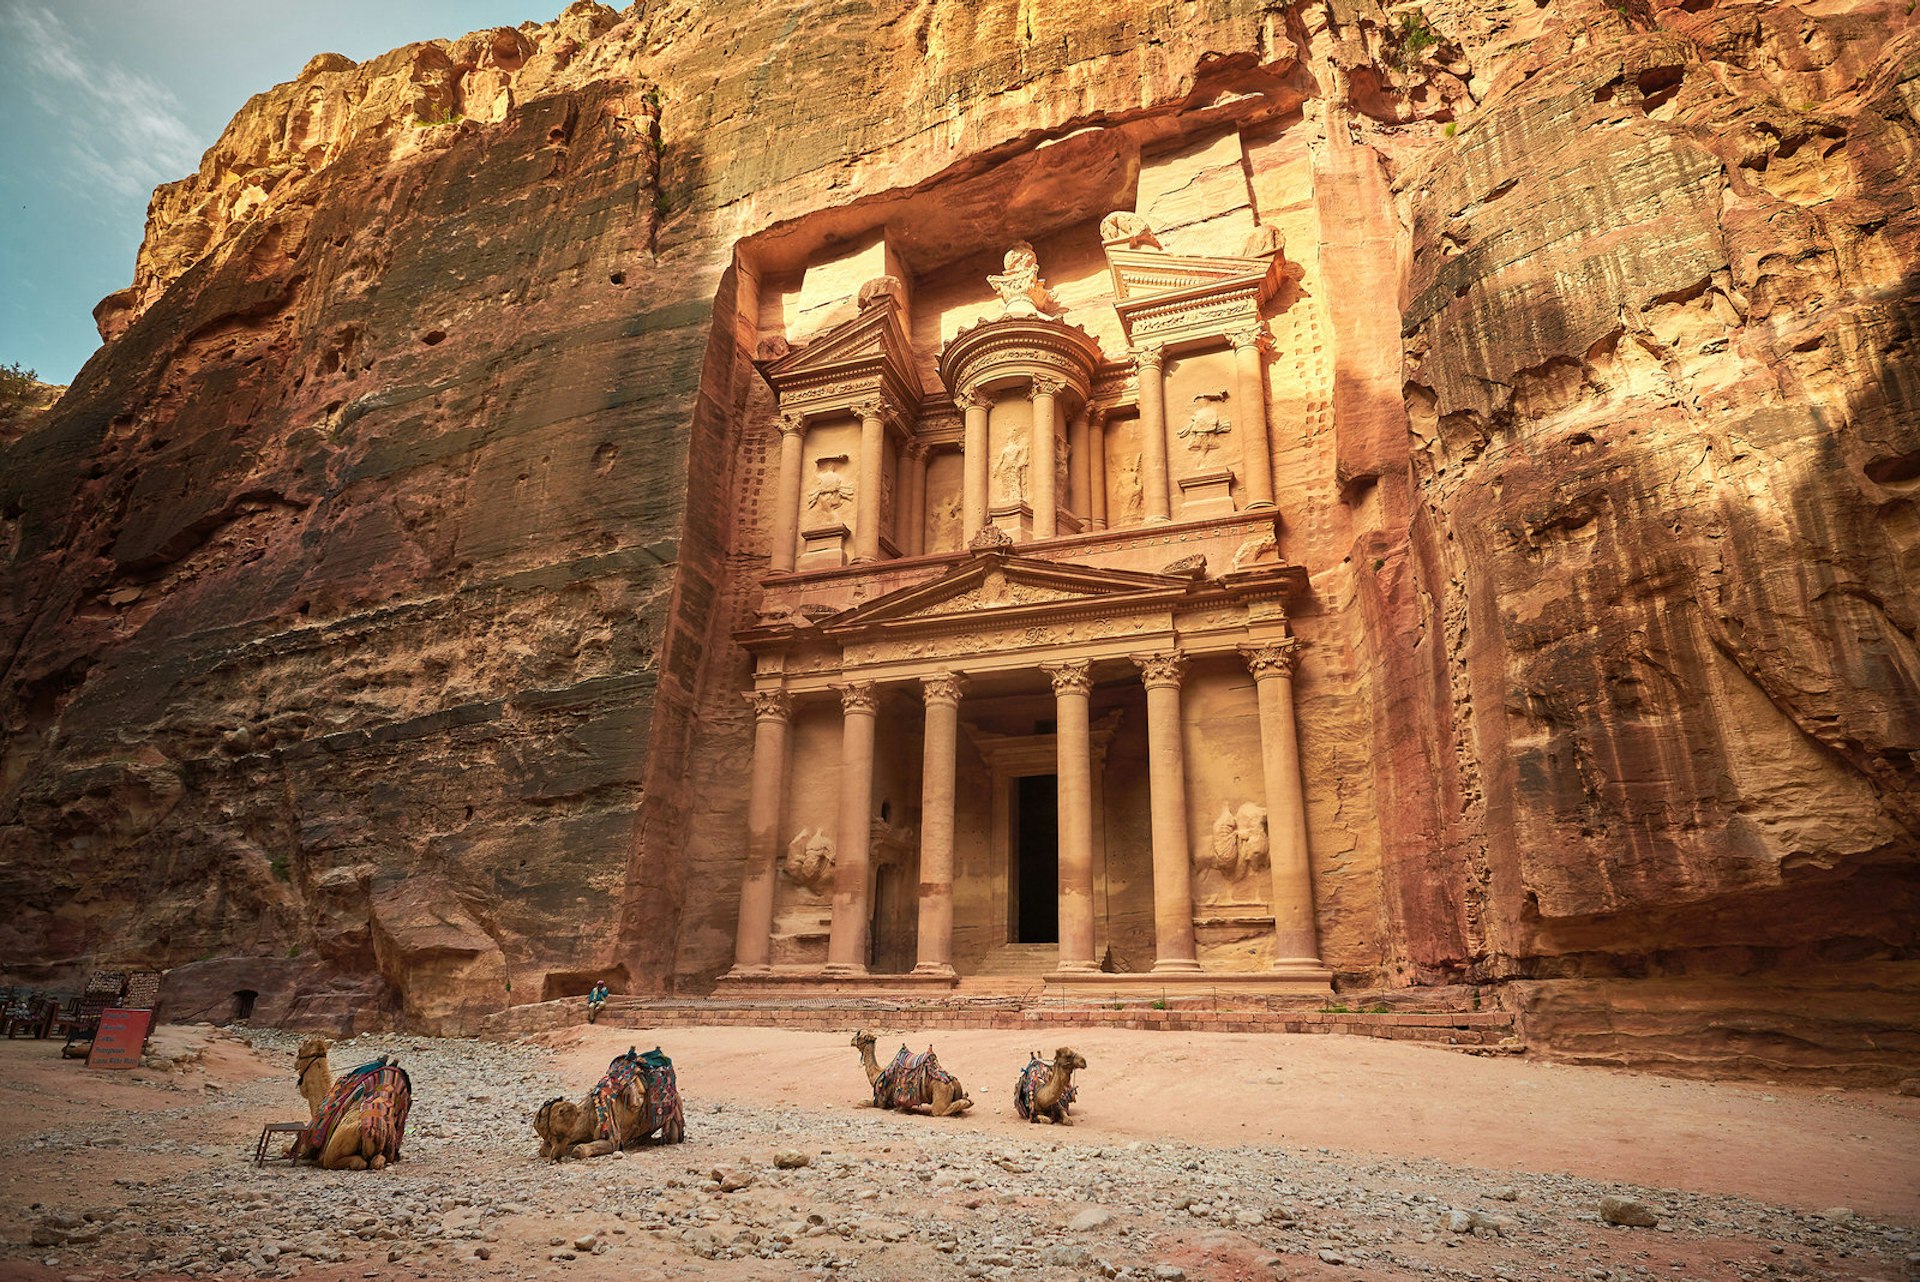 Camels rest in front of Al Khazneh, the Treasury, Petra, Jordan